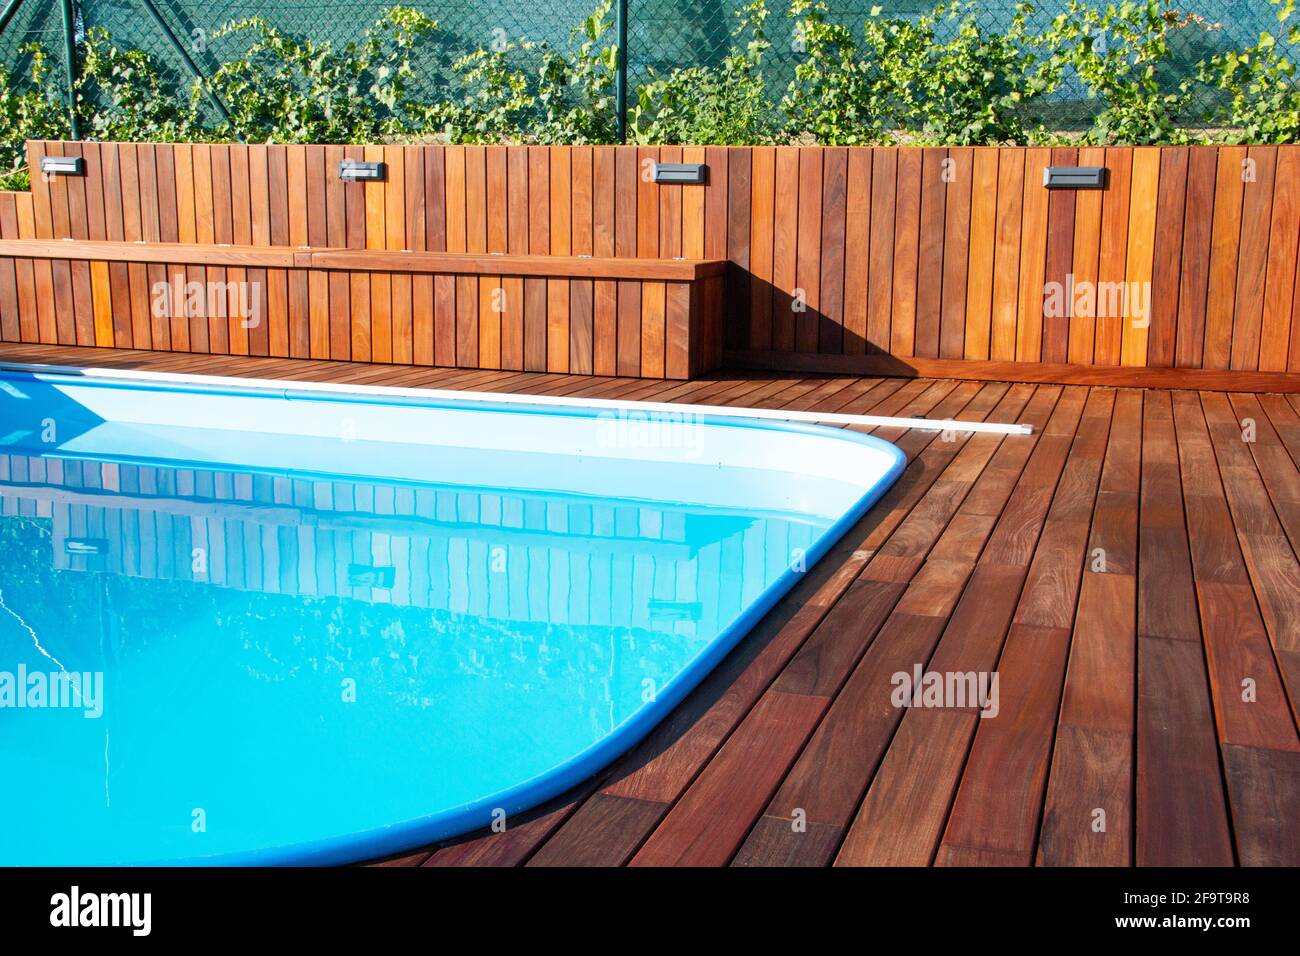 IPE Holzterrasse und Swimmingpool. Hinterhof-Terrasse am Pool, blaues Wasser im Kontrast zu tropischen Hartholzbrettern und wunderschöner Holzstruktur Stockfoto